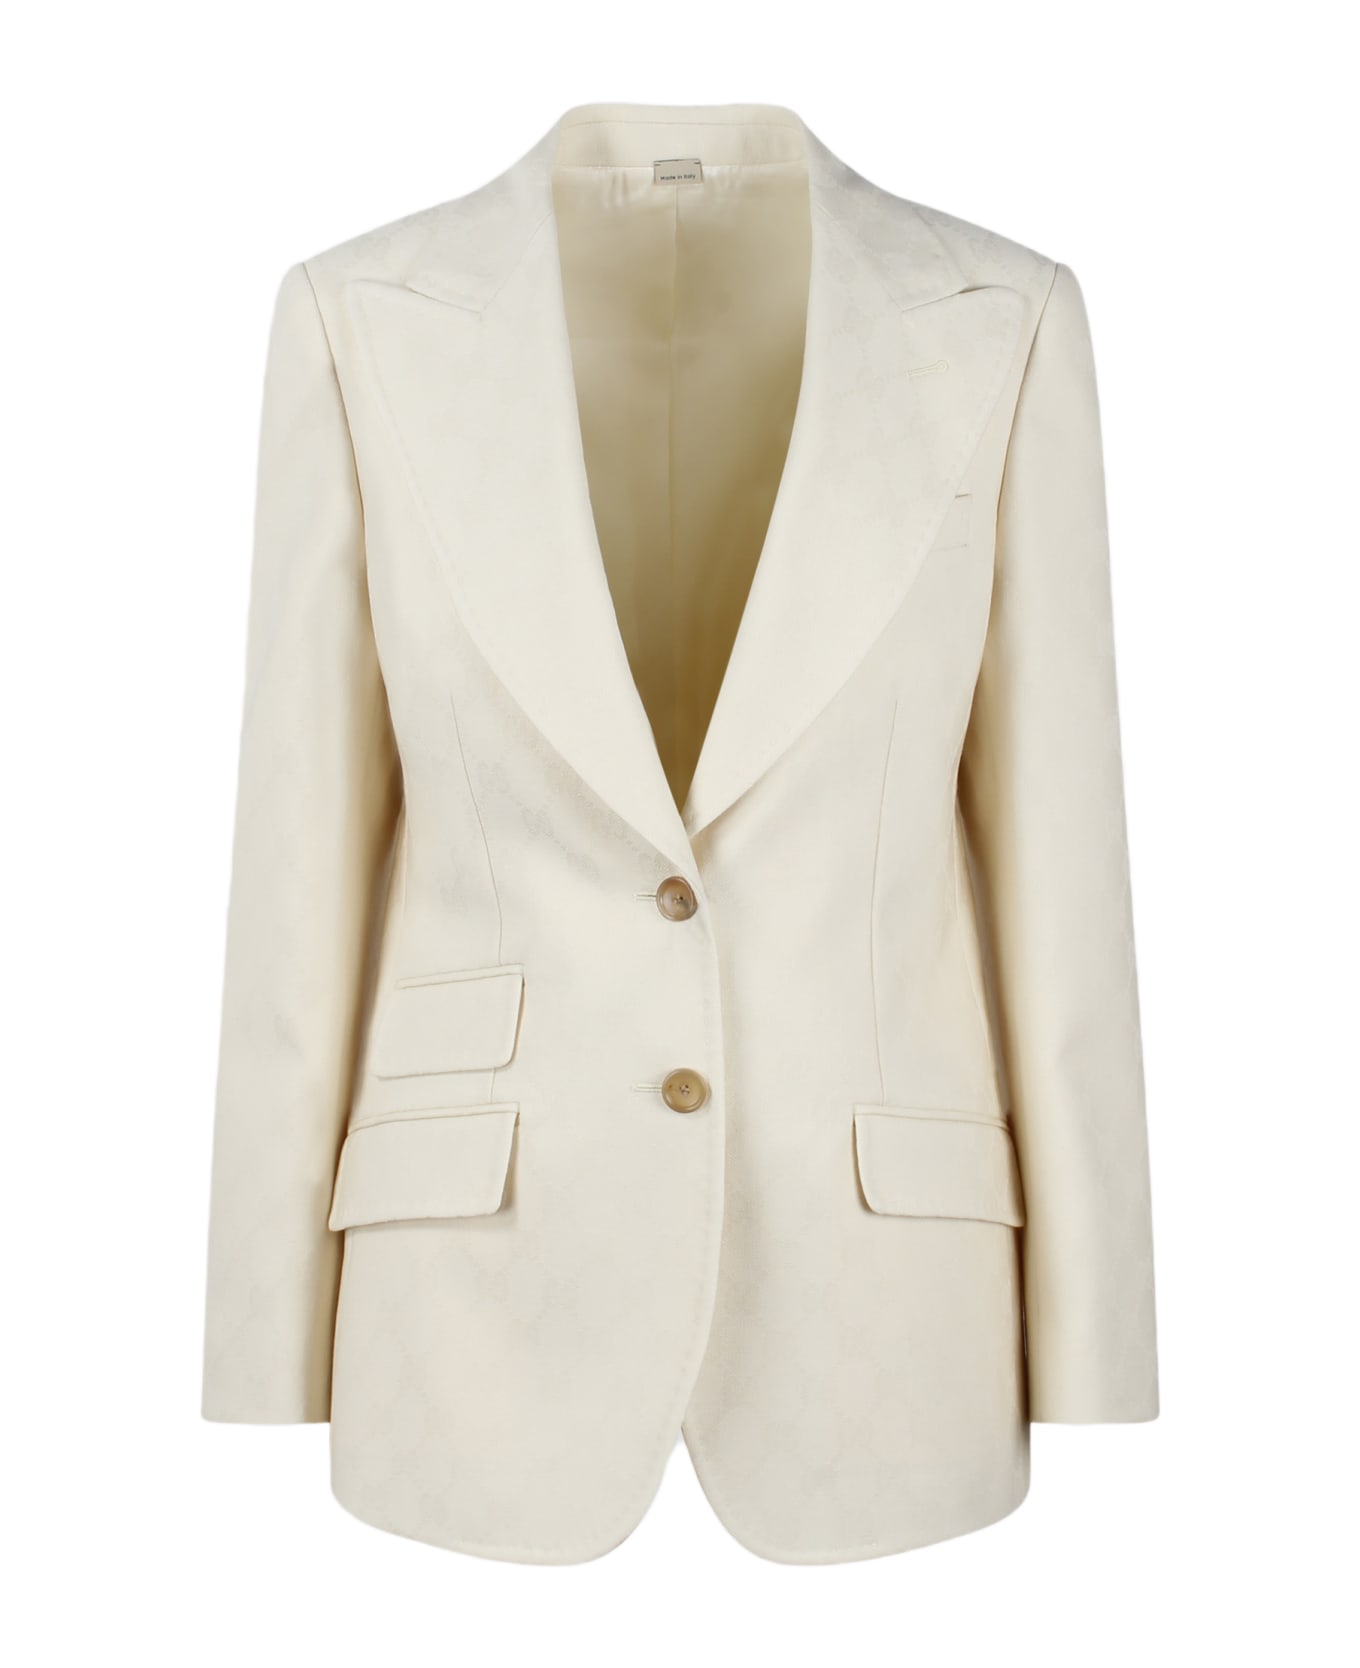 Gucci Gg Wool Jacquard Jacket - White